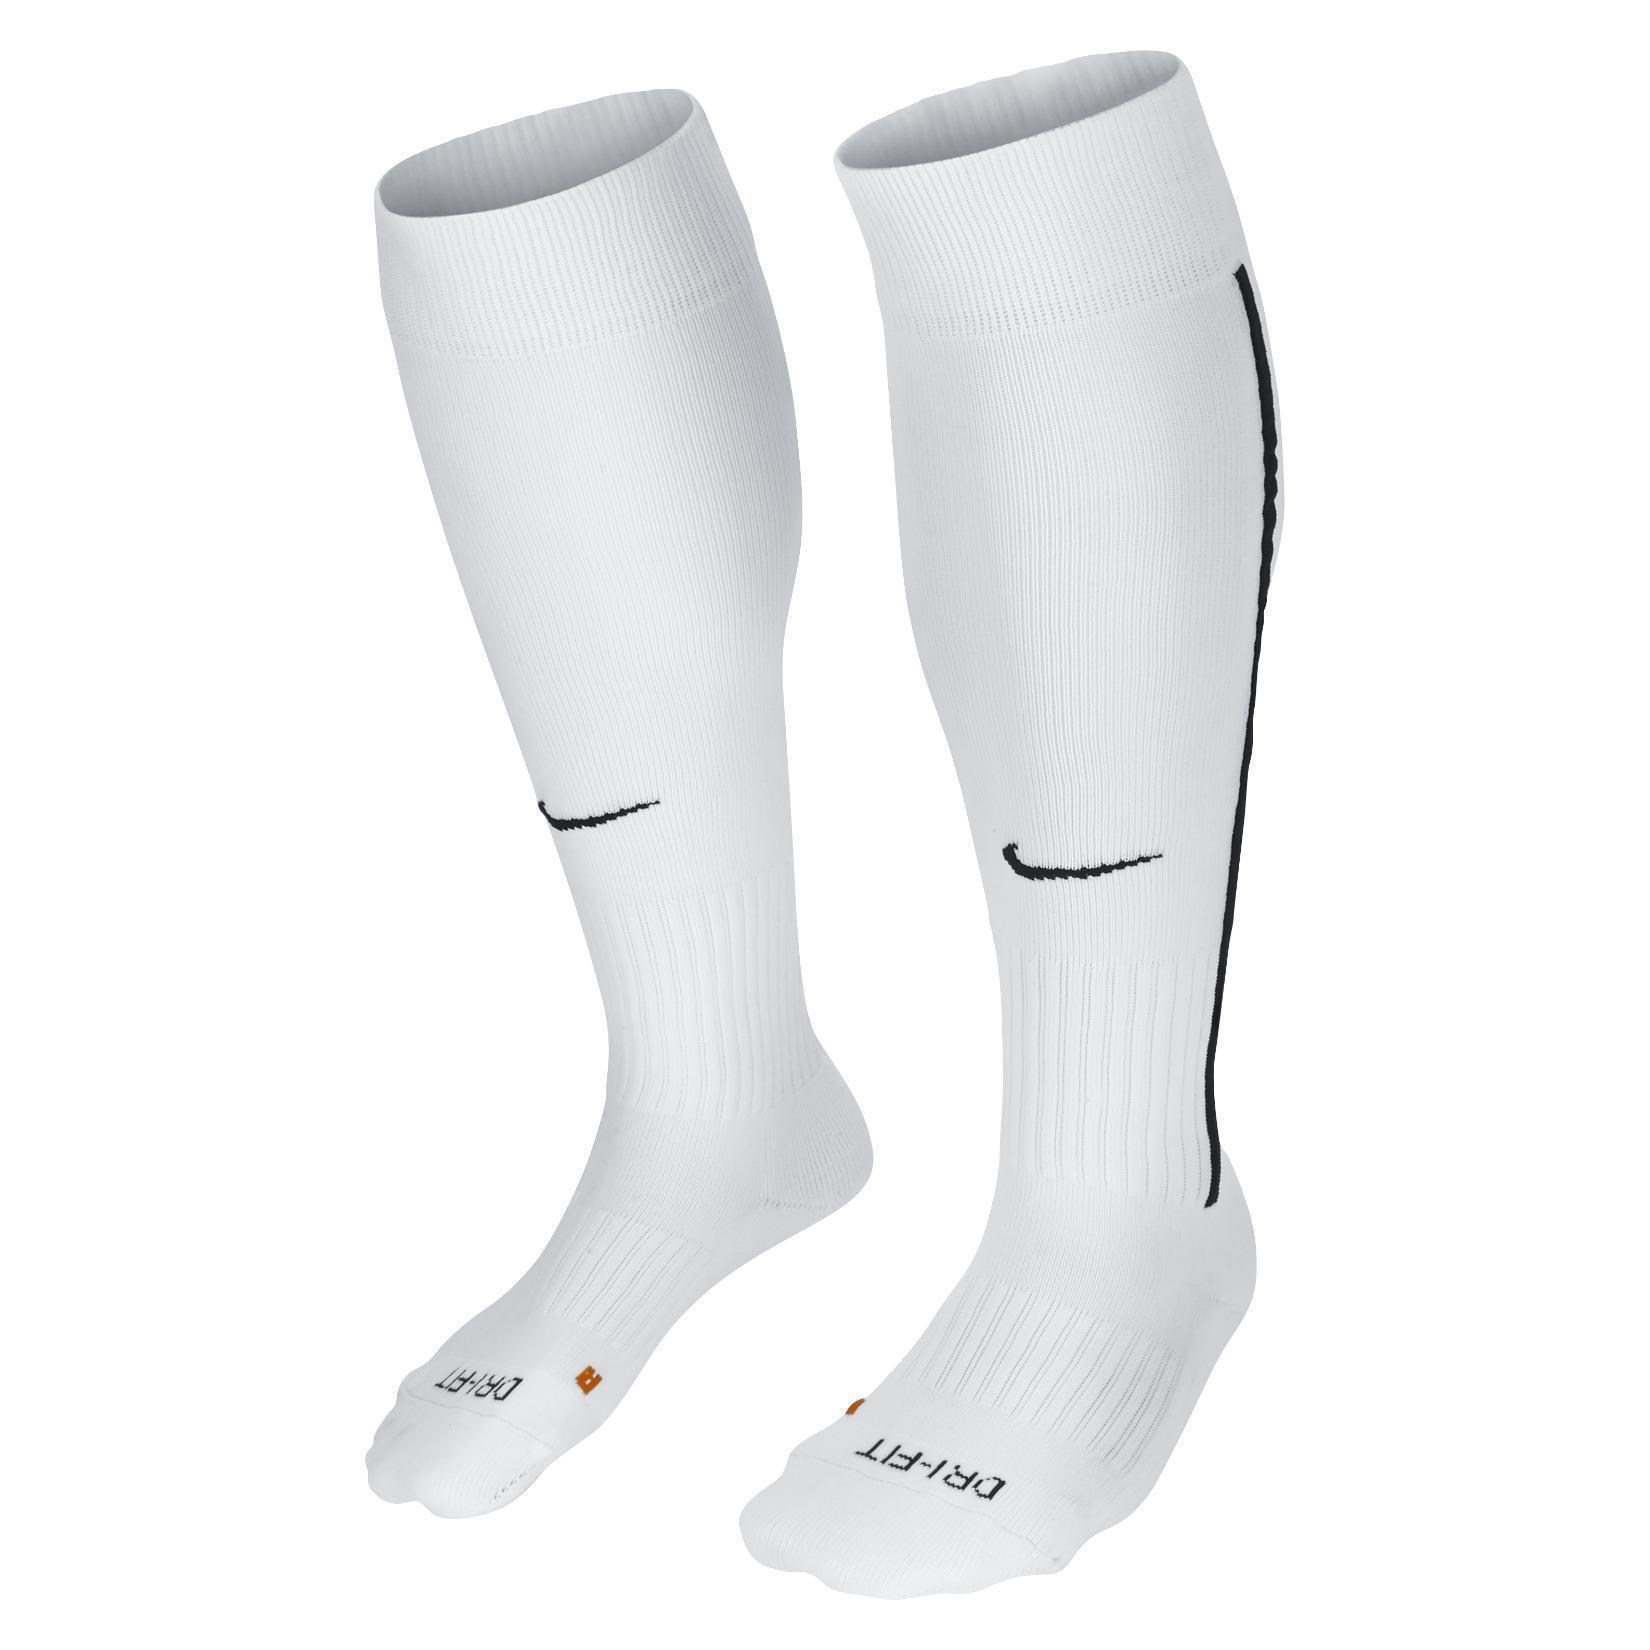 Nike Vapor III Socks - Kitlocker.com